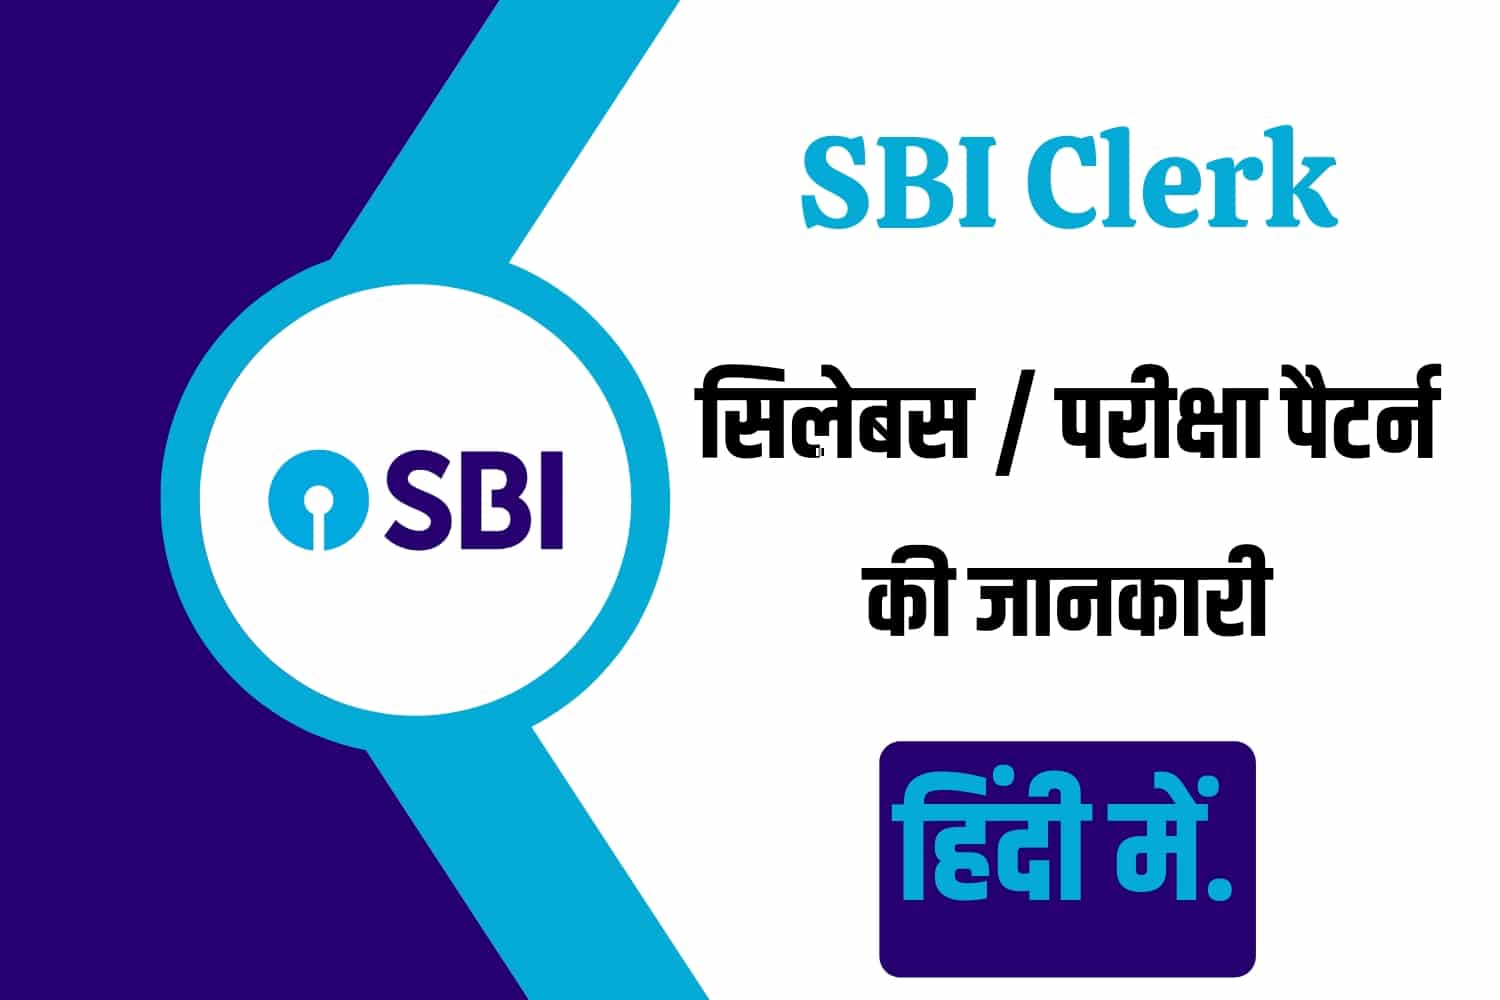 SBI Clerk Syllabus In Hindi | SBI क्लर्क सिलेबस इन हिंदी